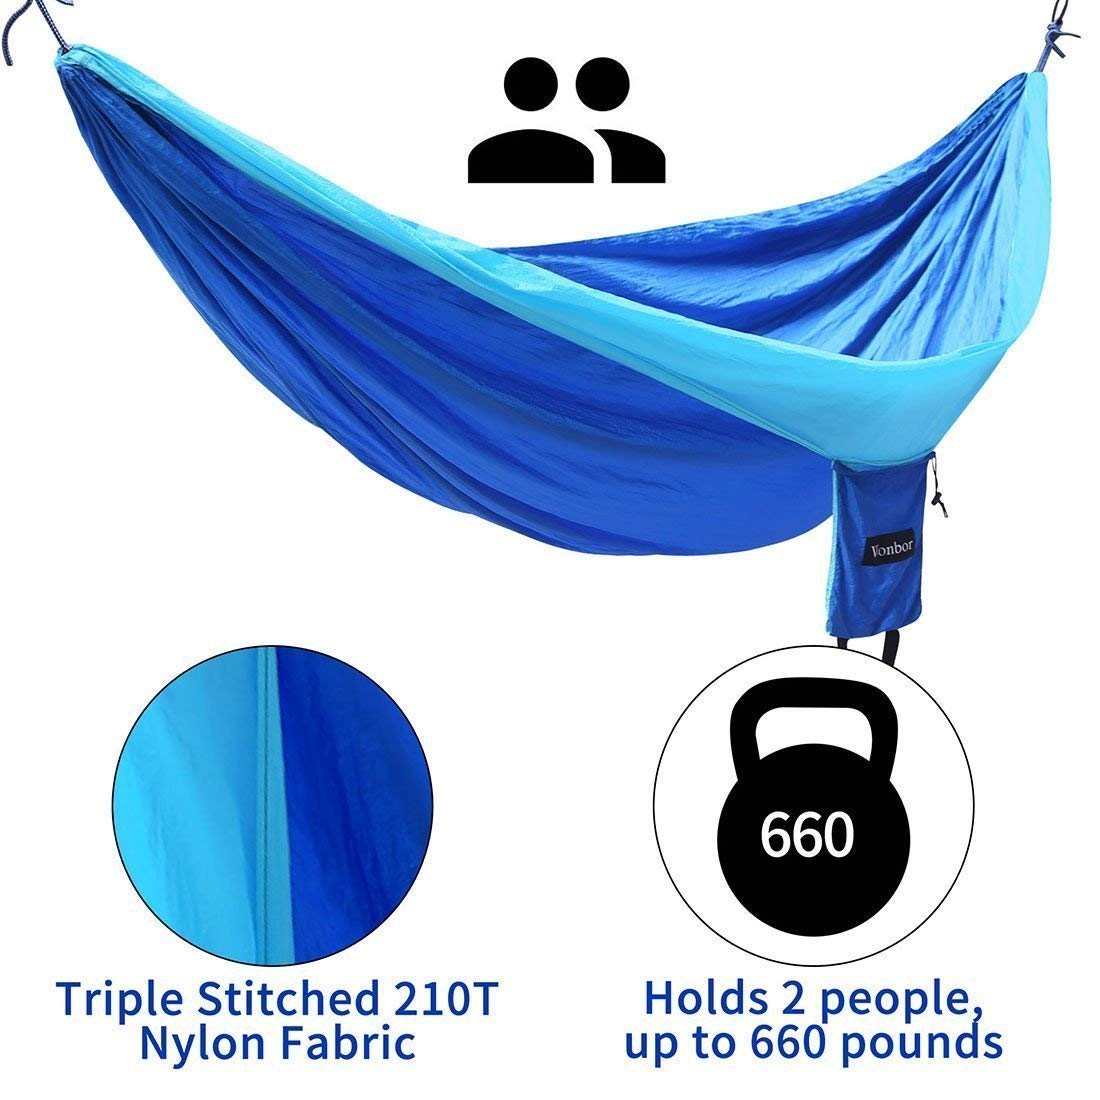 Cama de Rede em Nylon para Camping / Acampamento (Azul) - Multi4you®